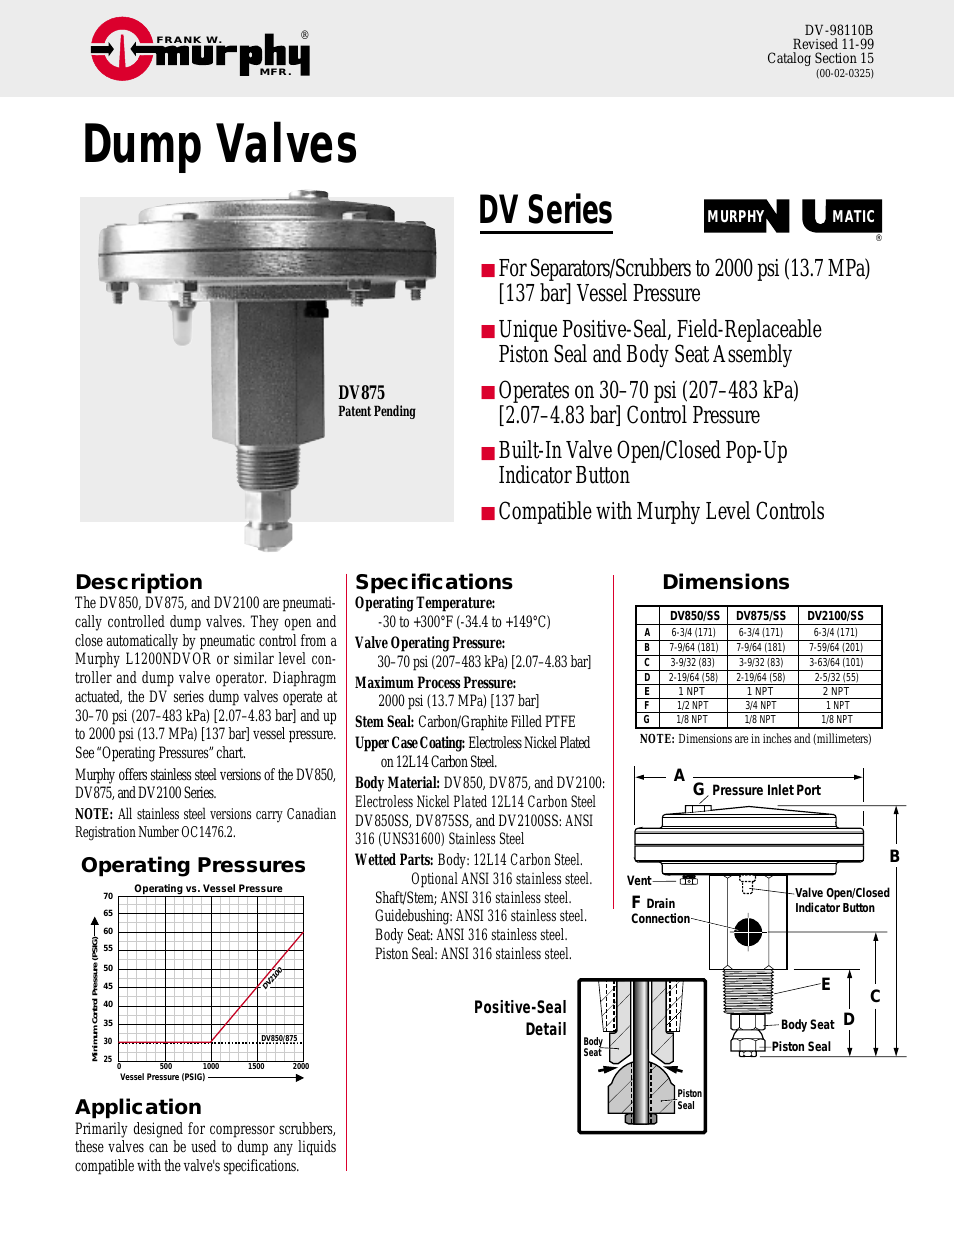 Dump Valves DV Series